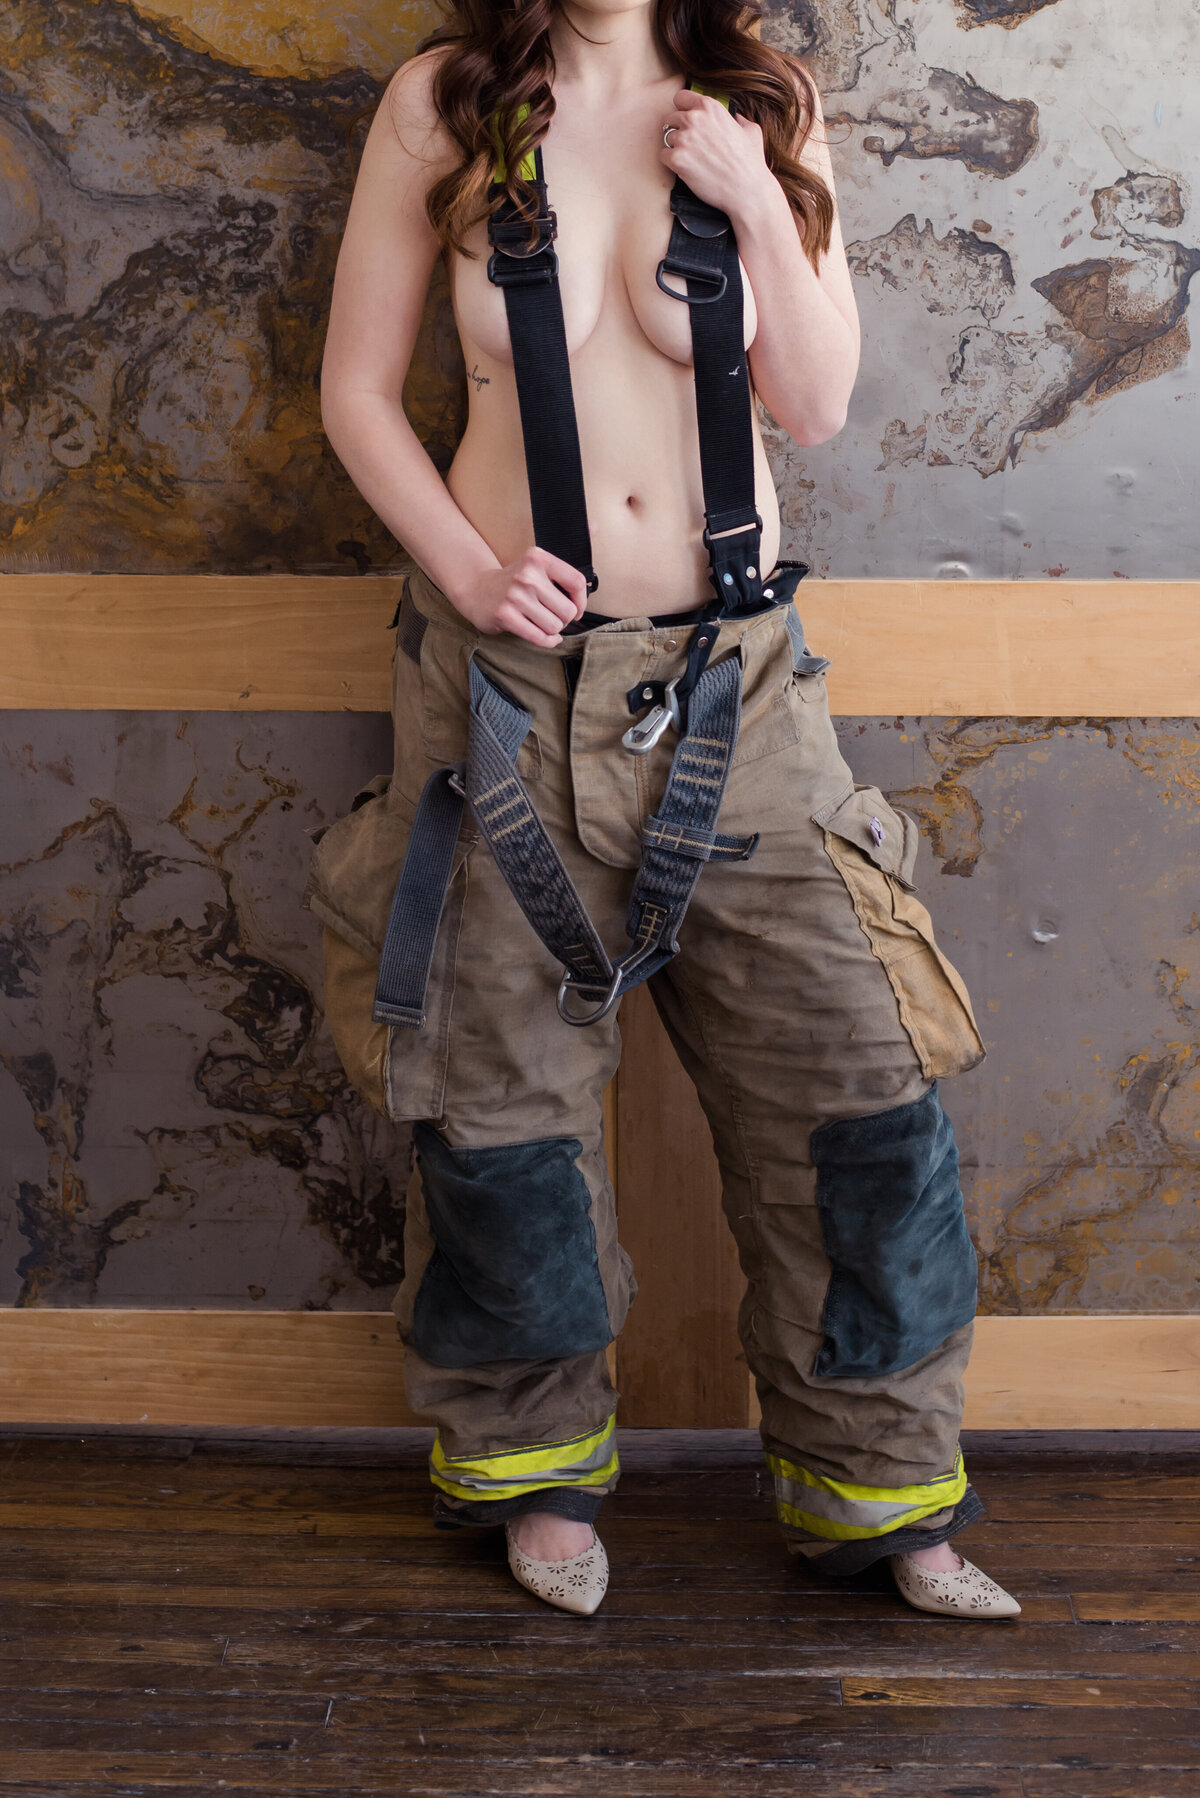 Firefighter boudoir photos Dallas TX